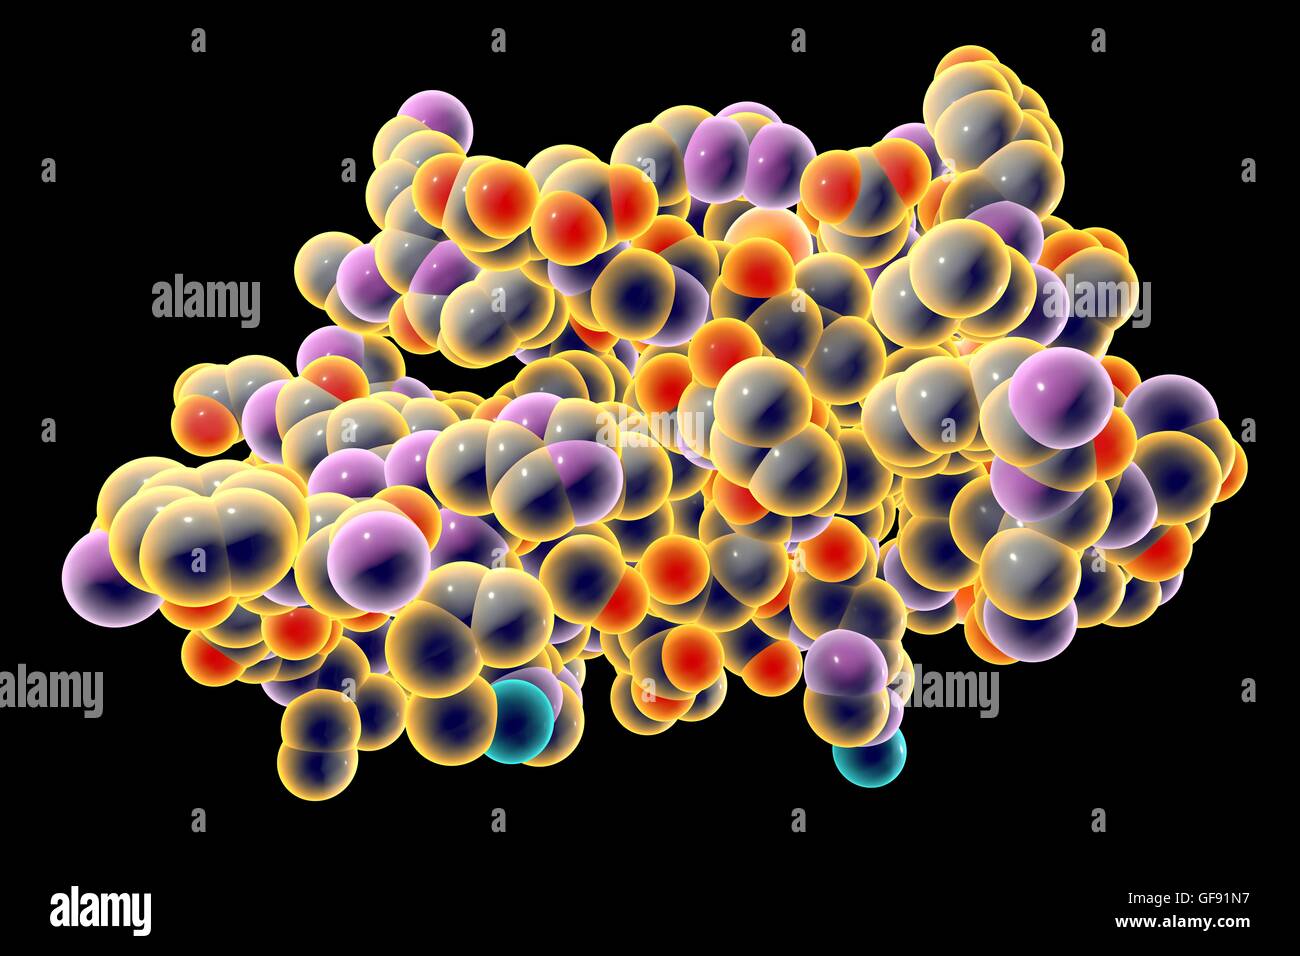 Insulin-Molekül. Computer-Modell zeigt die Struktur eines Moleküls des Hormoninsulin. Insulin spielt eine wichtige Rolle bei der Blutzuckerregulation. Insulin wird aus der Bauchspeicheldrüse freigegeben, wenn der Blutzuckerspiegel hoch sind, z. B. nach einer Mahlzeit, vorsagen Stockfoto